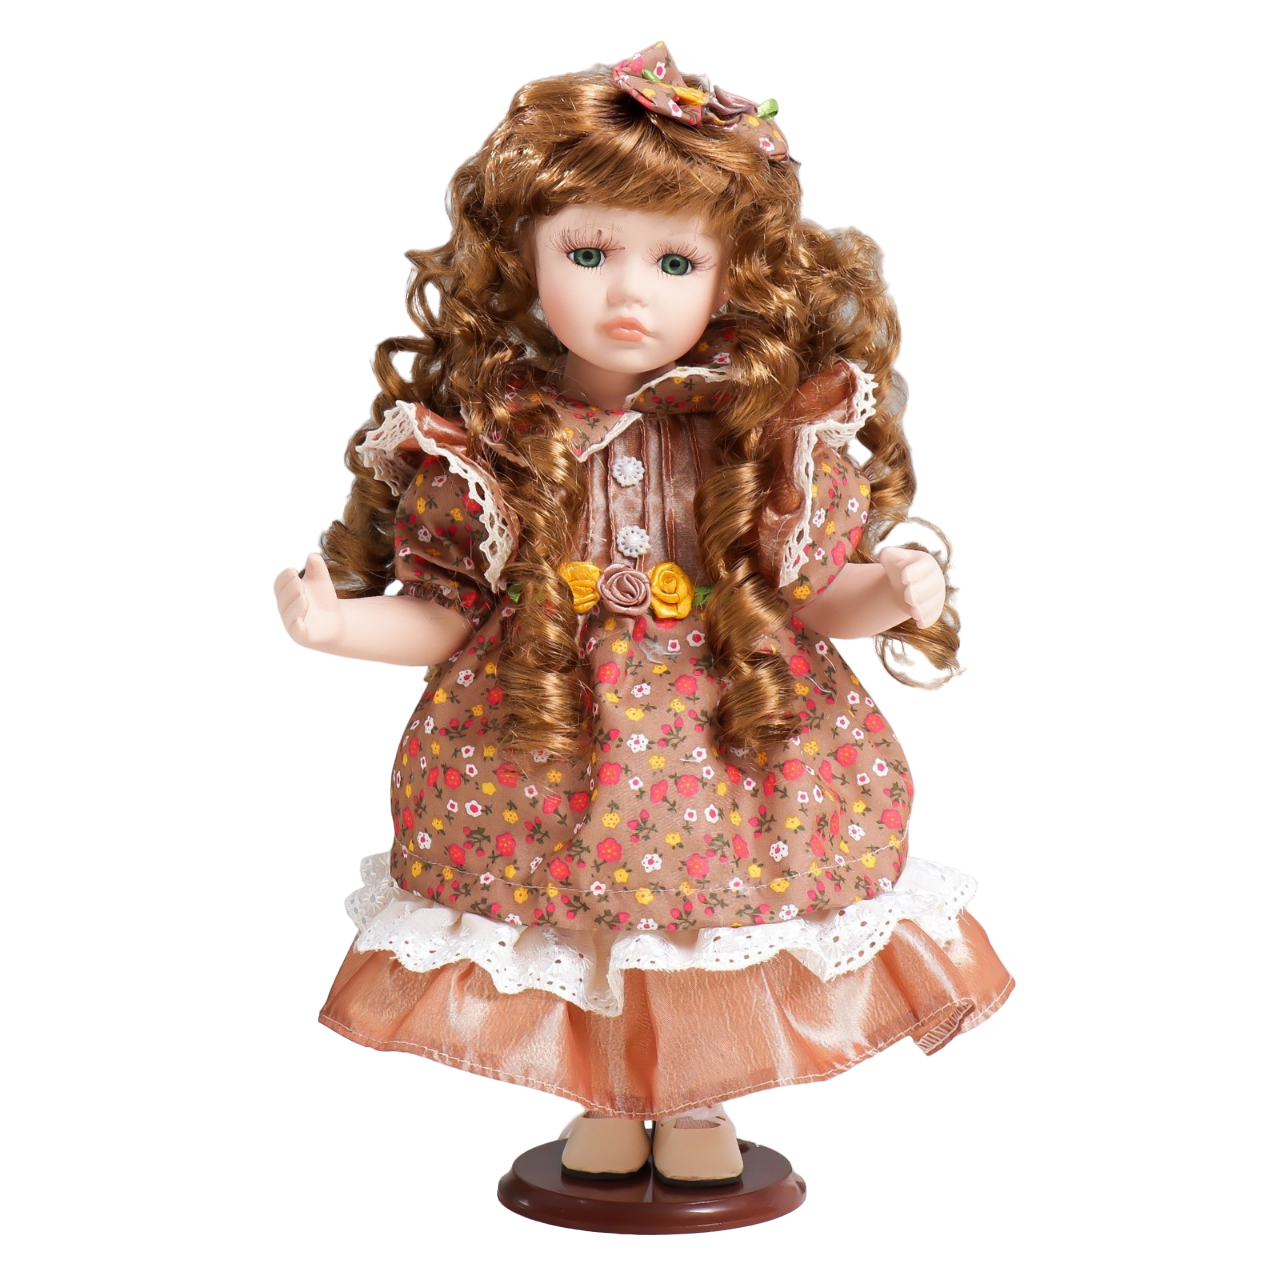 Кукла коллекционная керамика Тося в платье с мелкими цветочками, с бантом в волосах 30 см кукла коллекционная керамика мариша в клетчатом платье со шляпкой 30 см